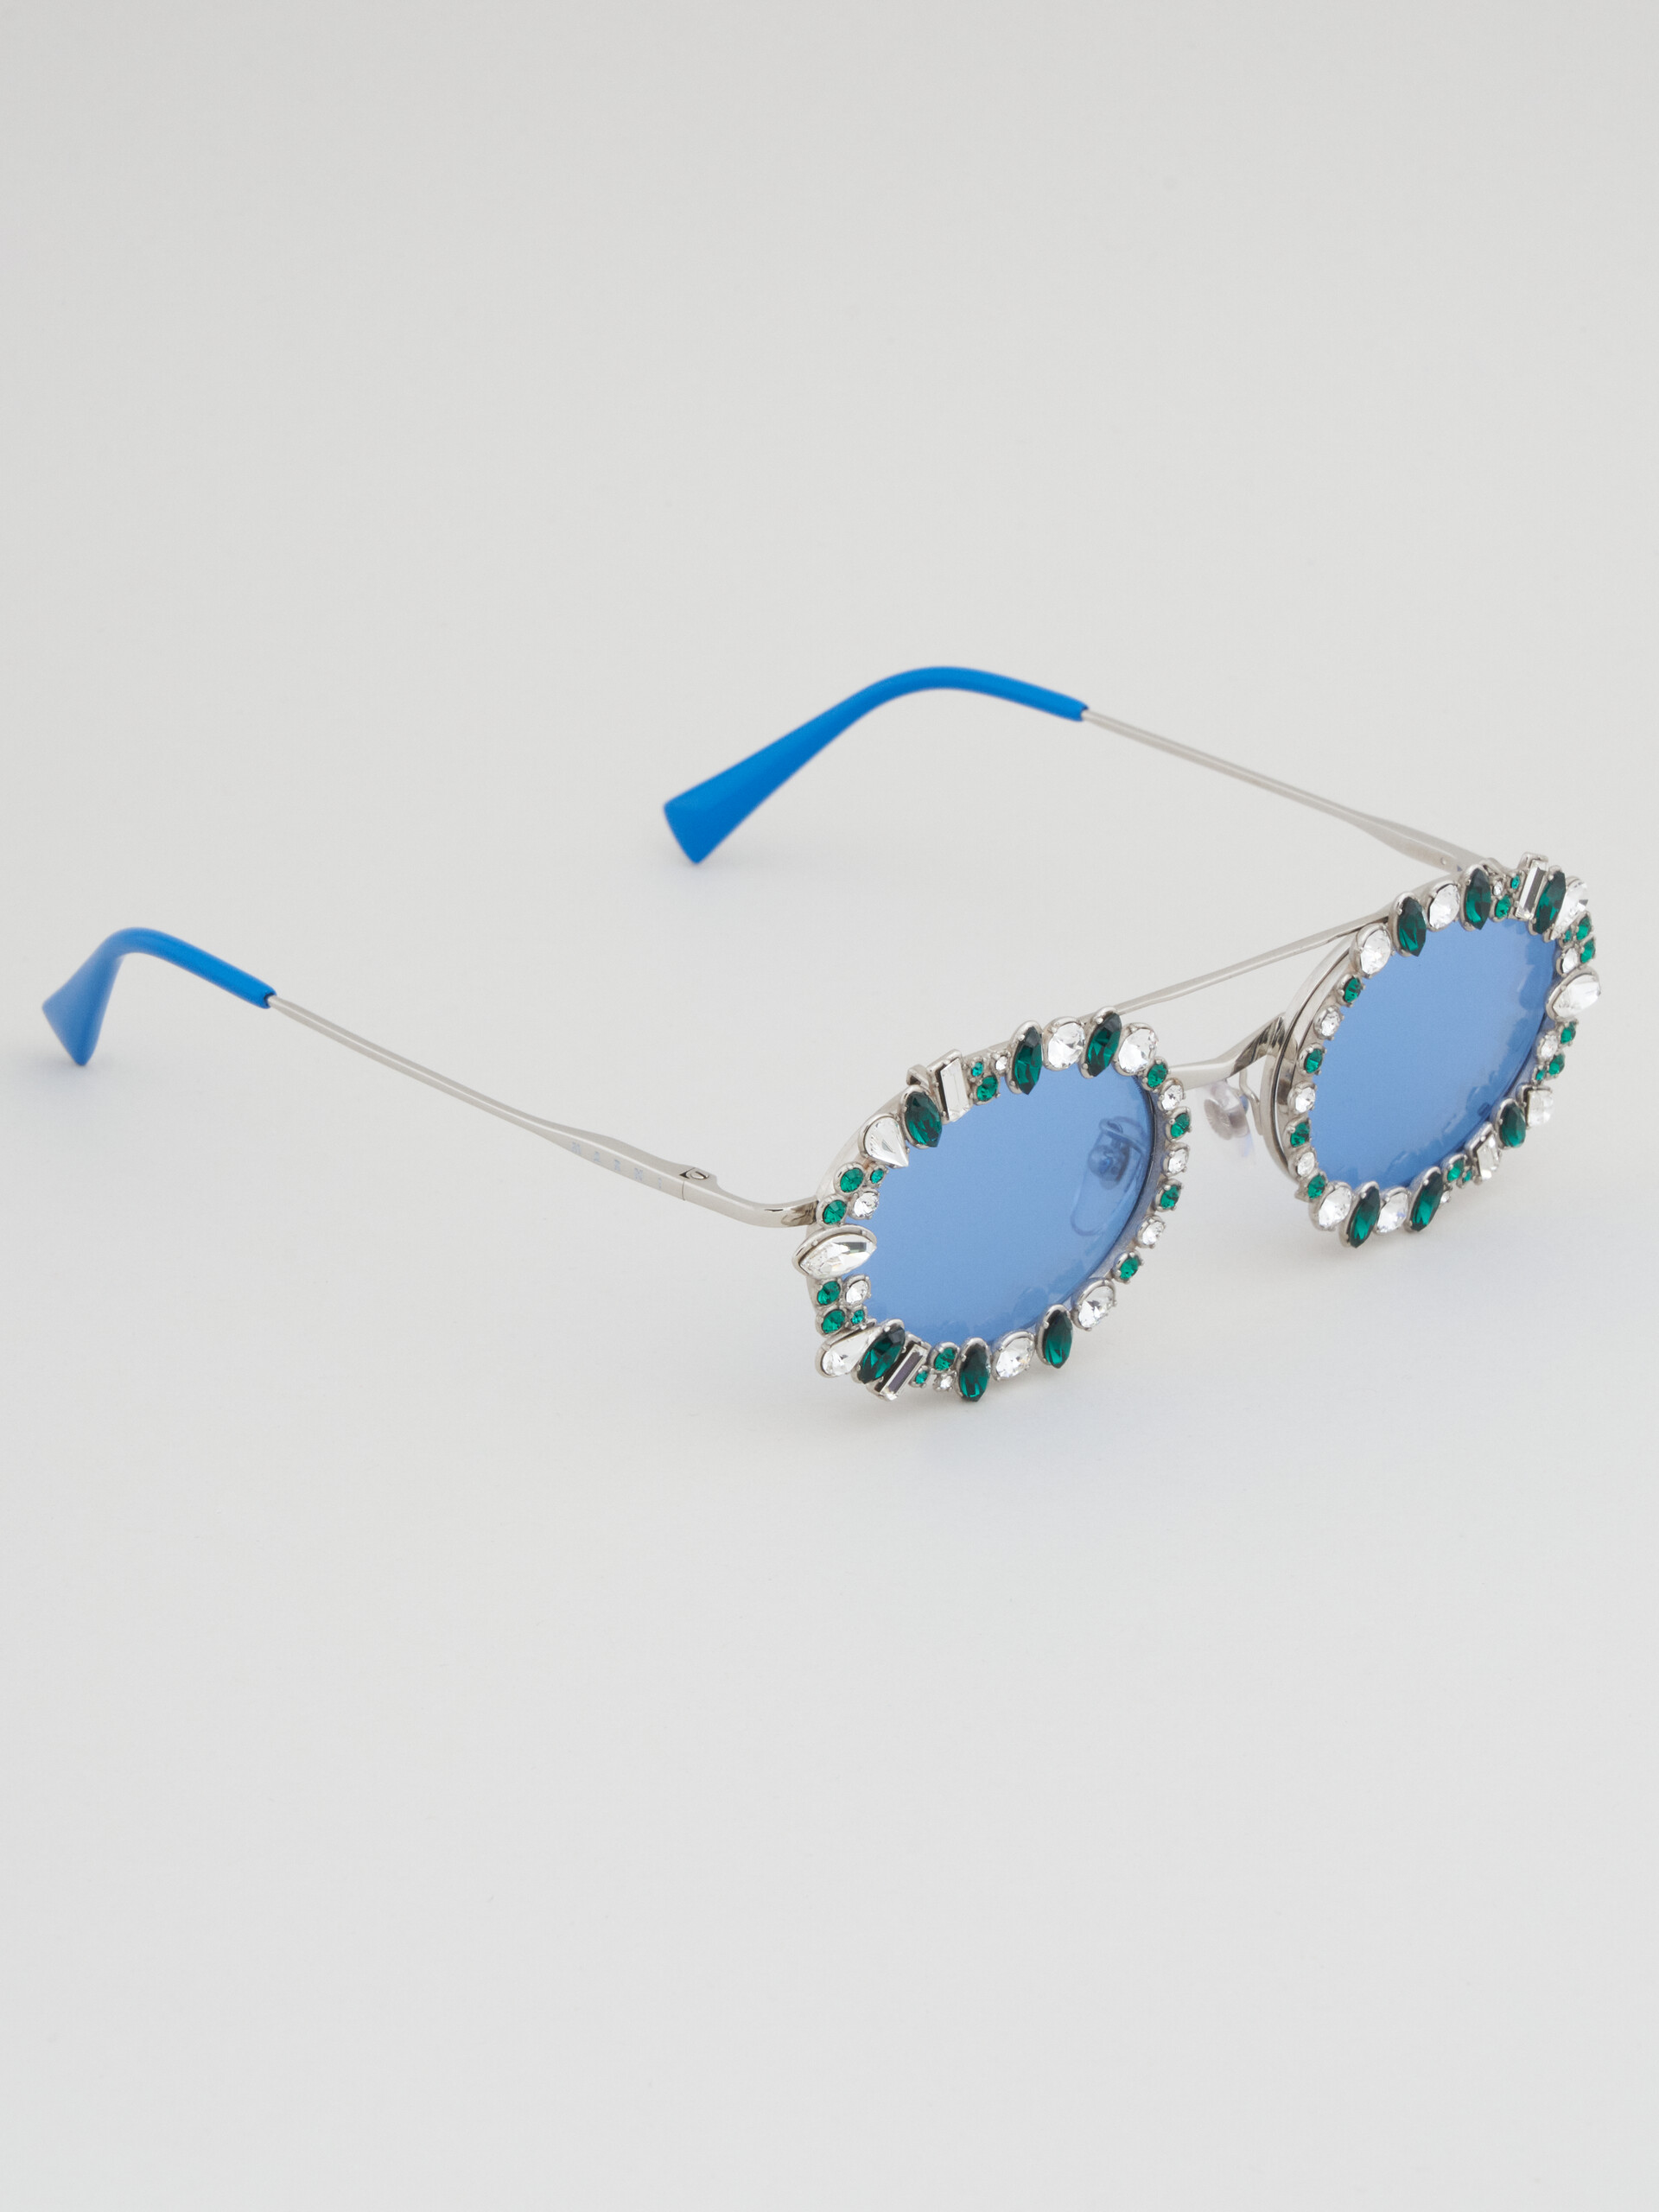 Silberne WAITOMO CAVES Brille - Optisch - Image 2